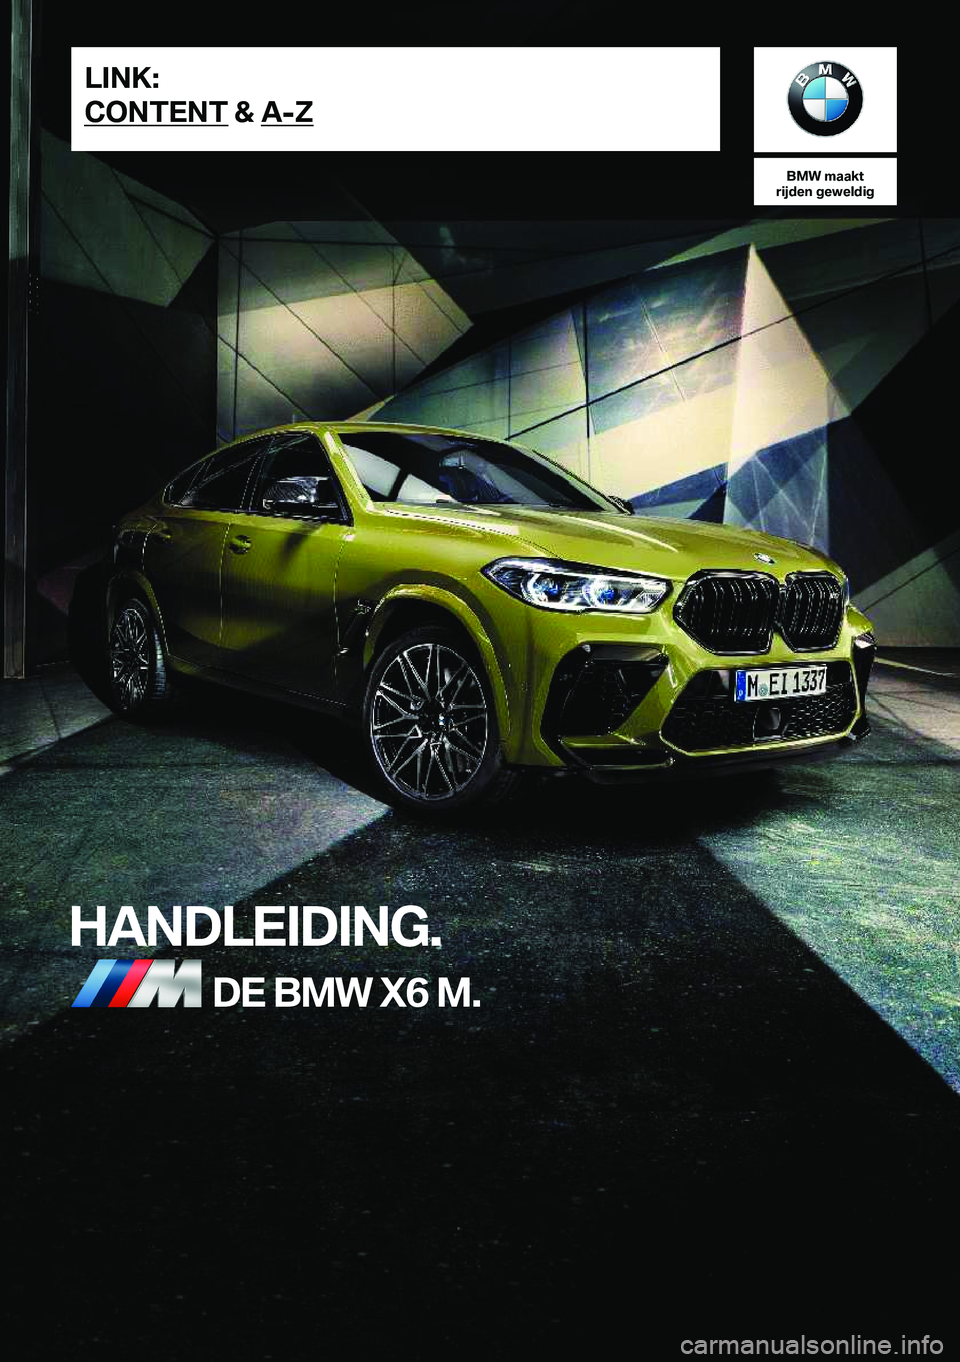 BMW X6 M 2020  Instructieboekjes (in Dutch) �B�M�W��m�a�a�k�t
�r�i�j�d�e�n��g�e�w�e�l�d�i�g
�H�A�N�D�L�E�I�D�I�N�G�.�D�E��B�M�W��X�6��M�.�L�I�N�K�:
�C�O�N�T�E�N�T��&��A�-�Z�O�n�l�i�n�e��E�d�i�t�i�o�n��f�o�r��P�a�r�t��n�o�.��0�1�4�0�